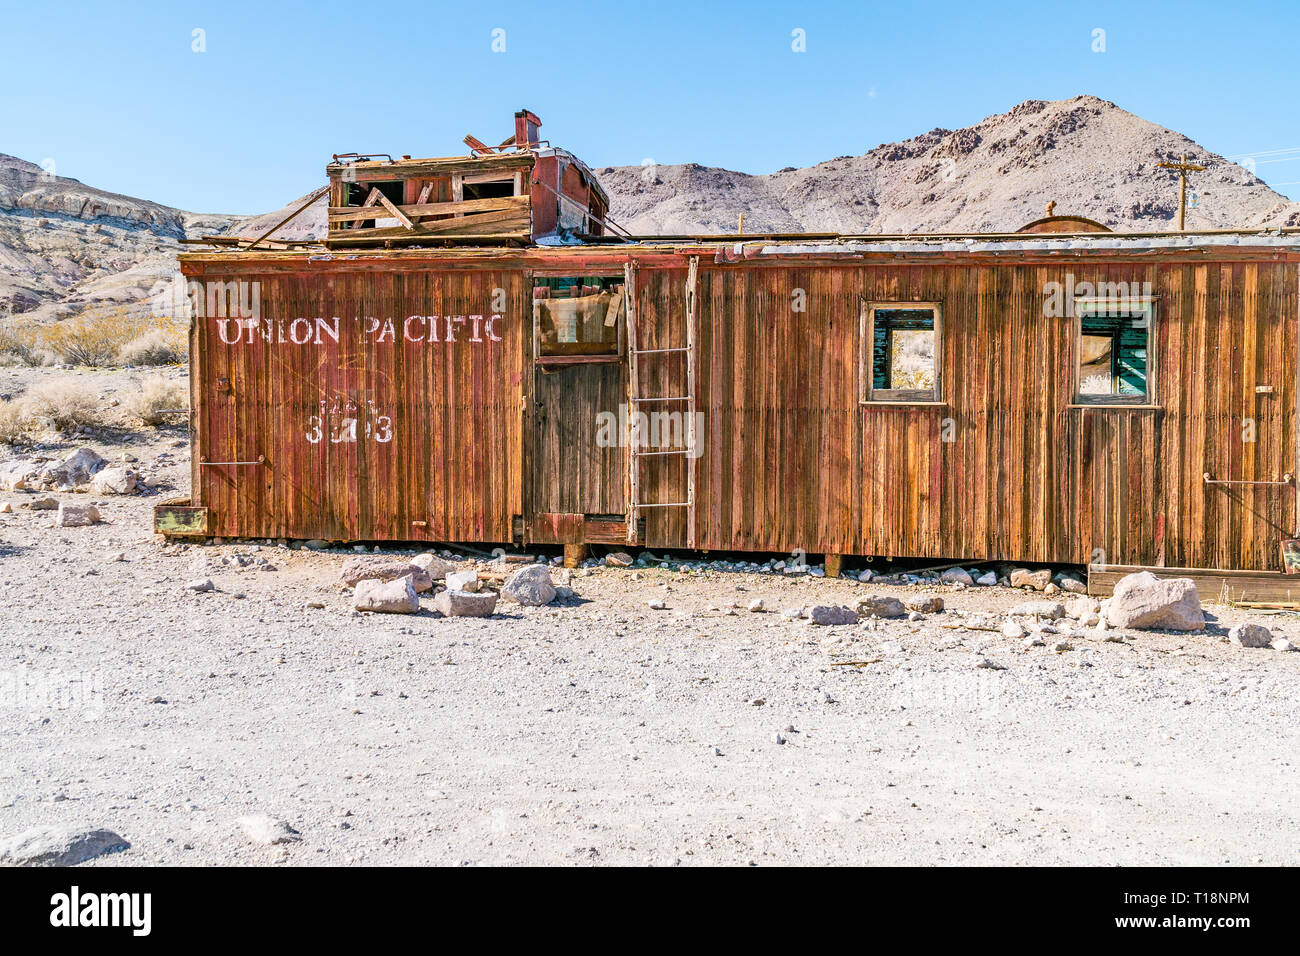 Eine verlassene, Rad - weniger Union Pacific Caboose verfallende in der Mojave Wüste Geisterstadt Rhyolith. Ein caboose ist ein bemanntes North American Railroad car Stockfoto